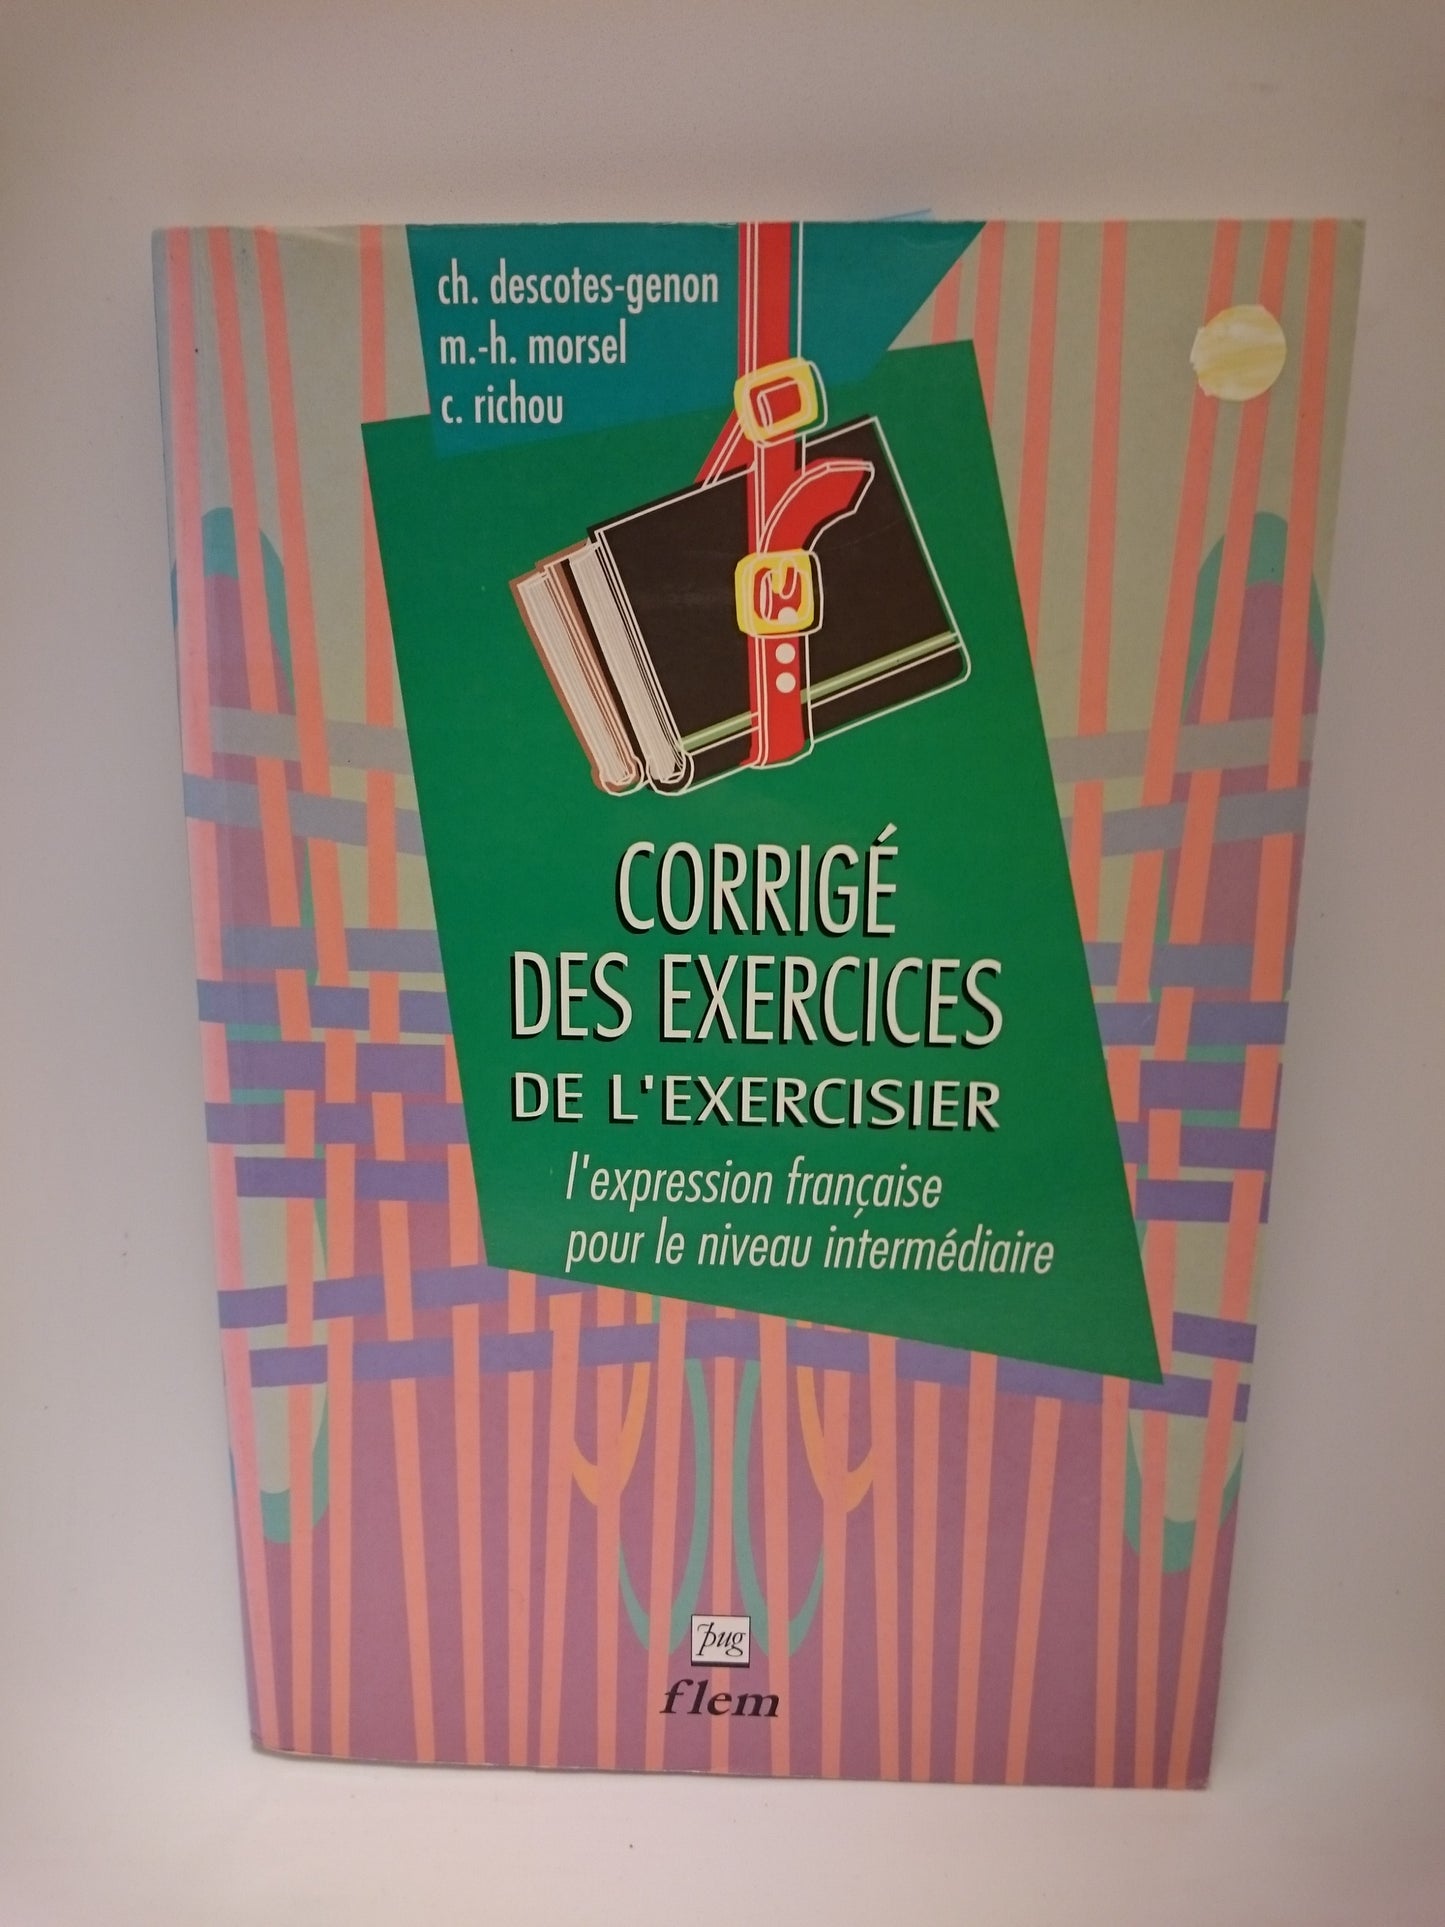 L'exercisier : L'expression fran�aise pour le niveau interm�diaire, corrig� des exercices (French Edition)